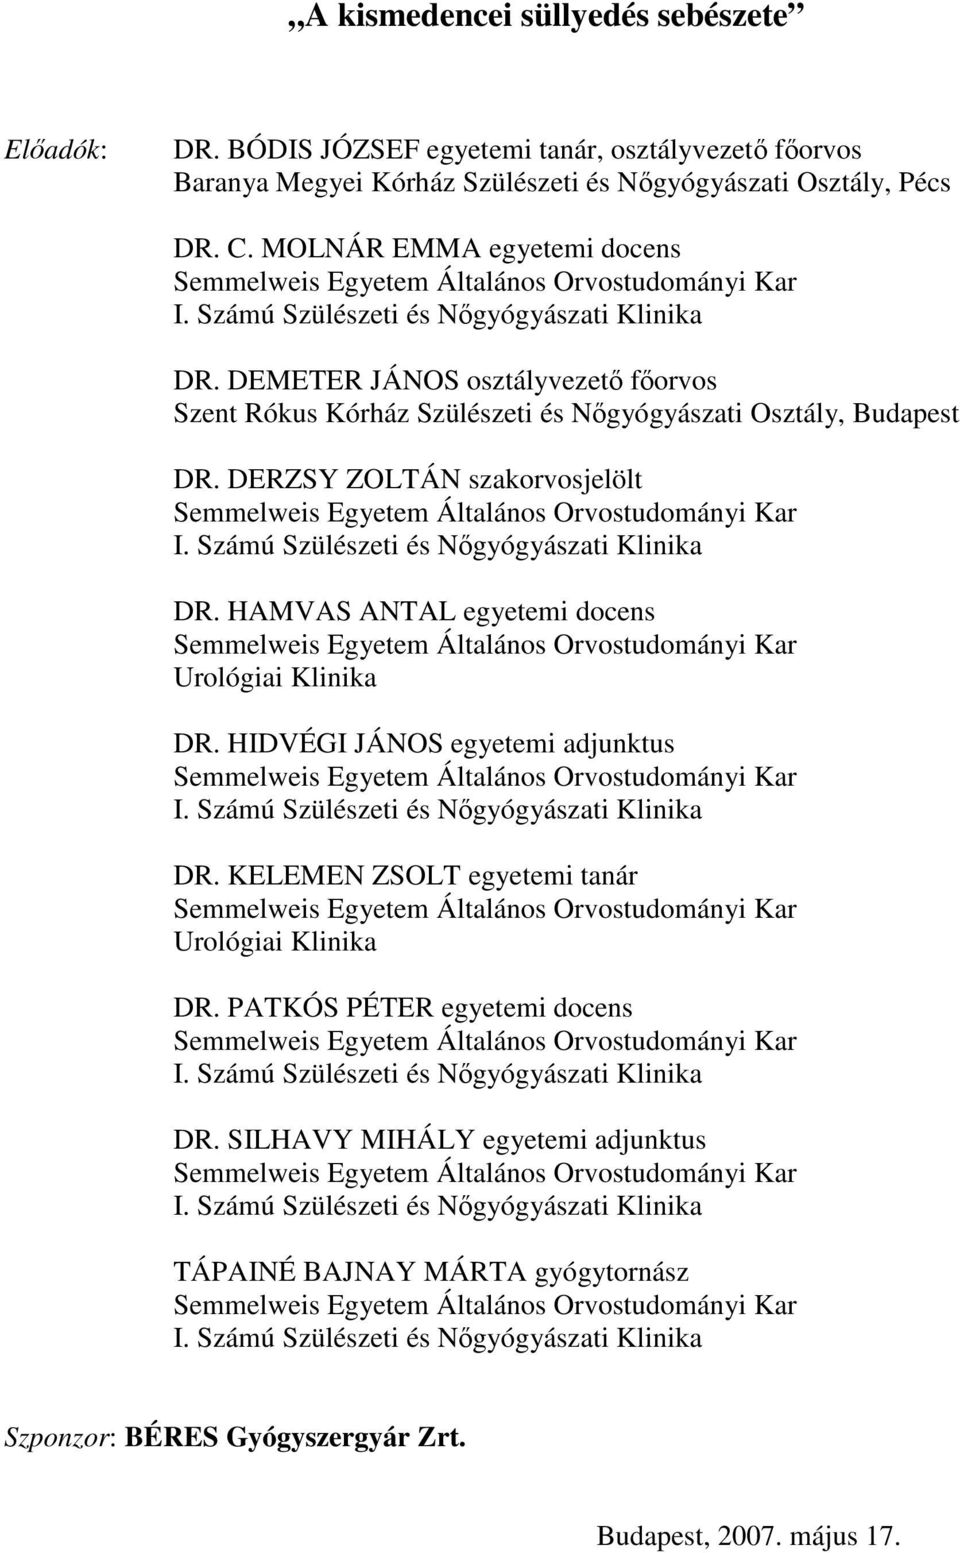 Számú Szülészeti és Nıgyógyászati Klinika DR. HAMVAS ANTAL egyetemi docens Urológiai Klinika DR. HIDVÉGI JÁNOS egyetemi adjunktus I. Számú Szülészeti és Nıgyógyászati Klinika DR.